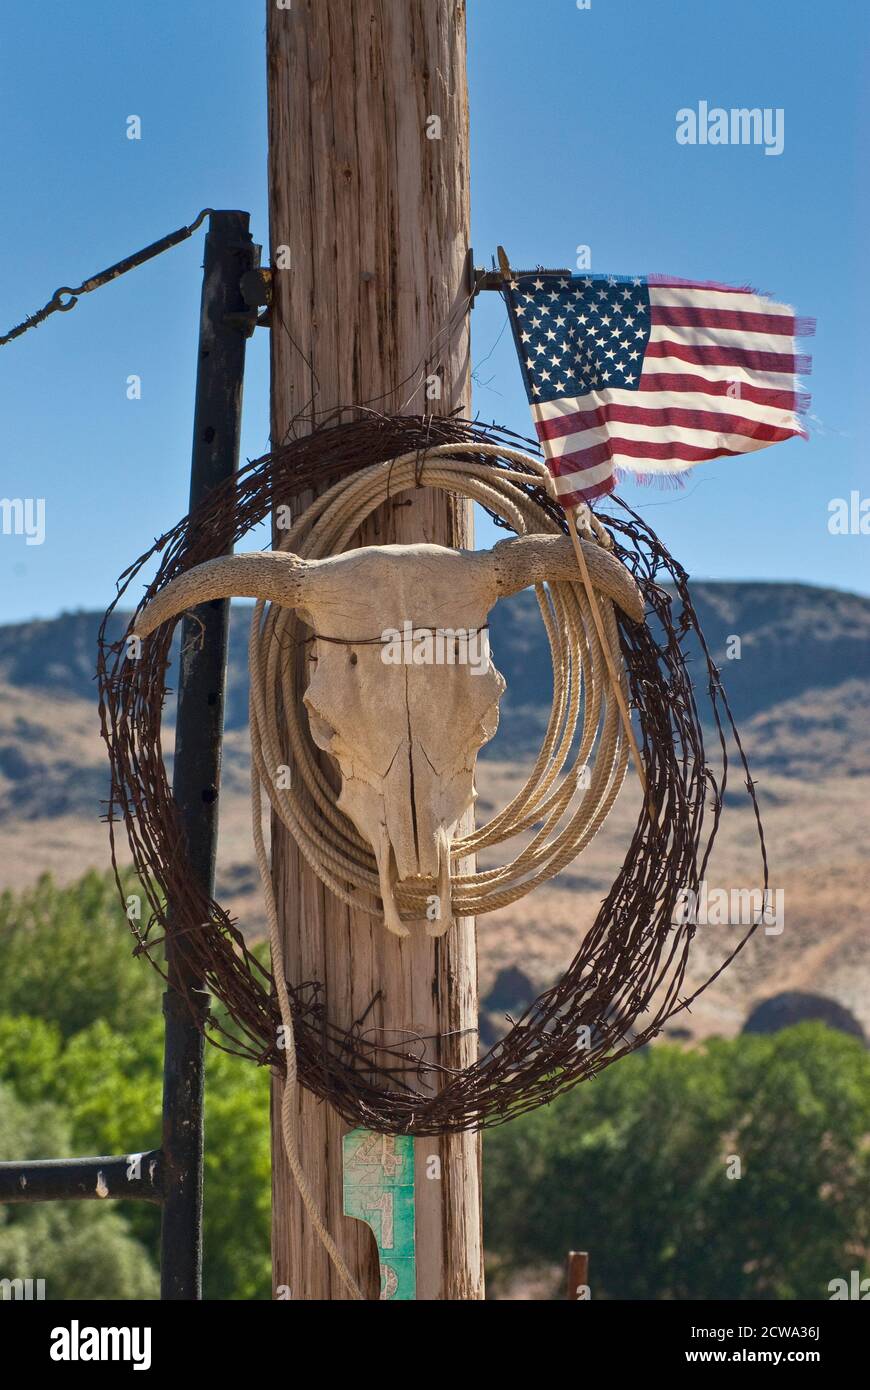 Bobina di filo spinato, lazo, cranio toro e bandiera americana sfilacciata al posto di cancello del ranch in Succor Creek Valley, High Desert Region, Oregon, USA Foto Stock